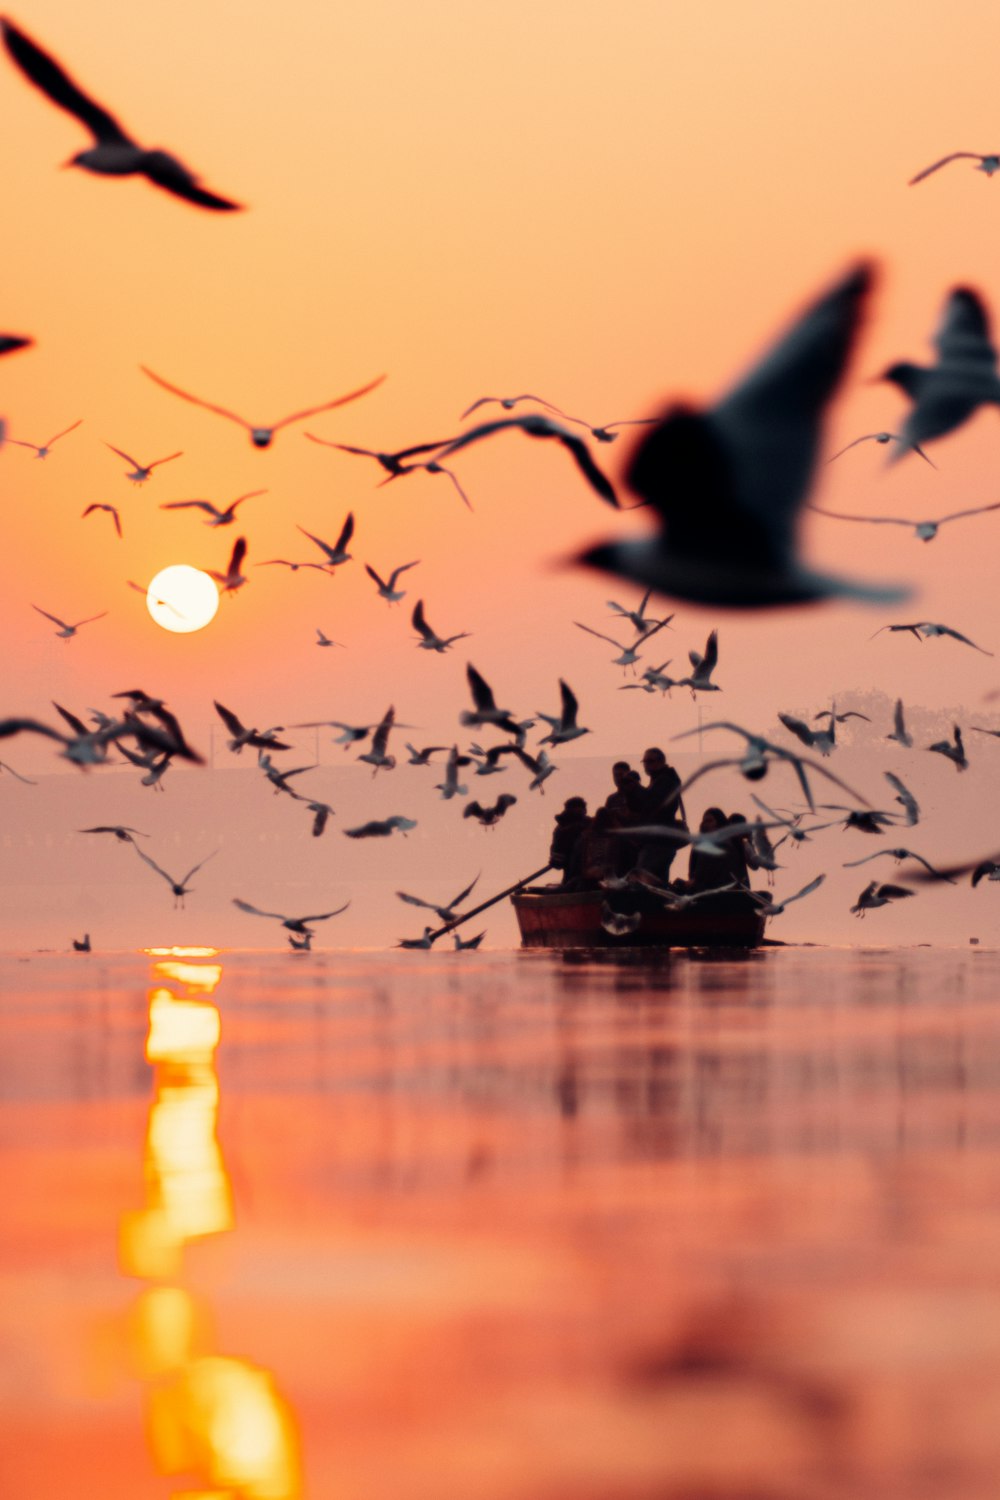 Una bandada de pájaros volando sobre un barco en el océano